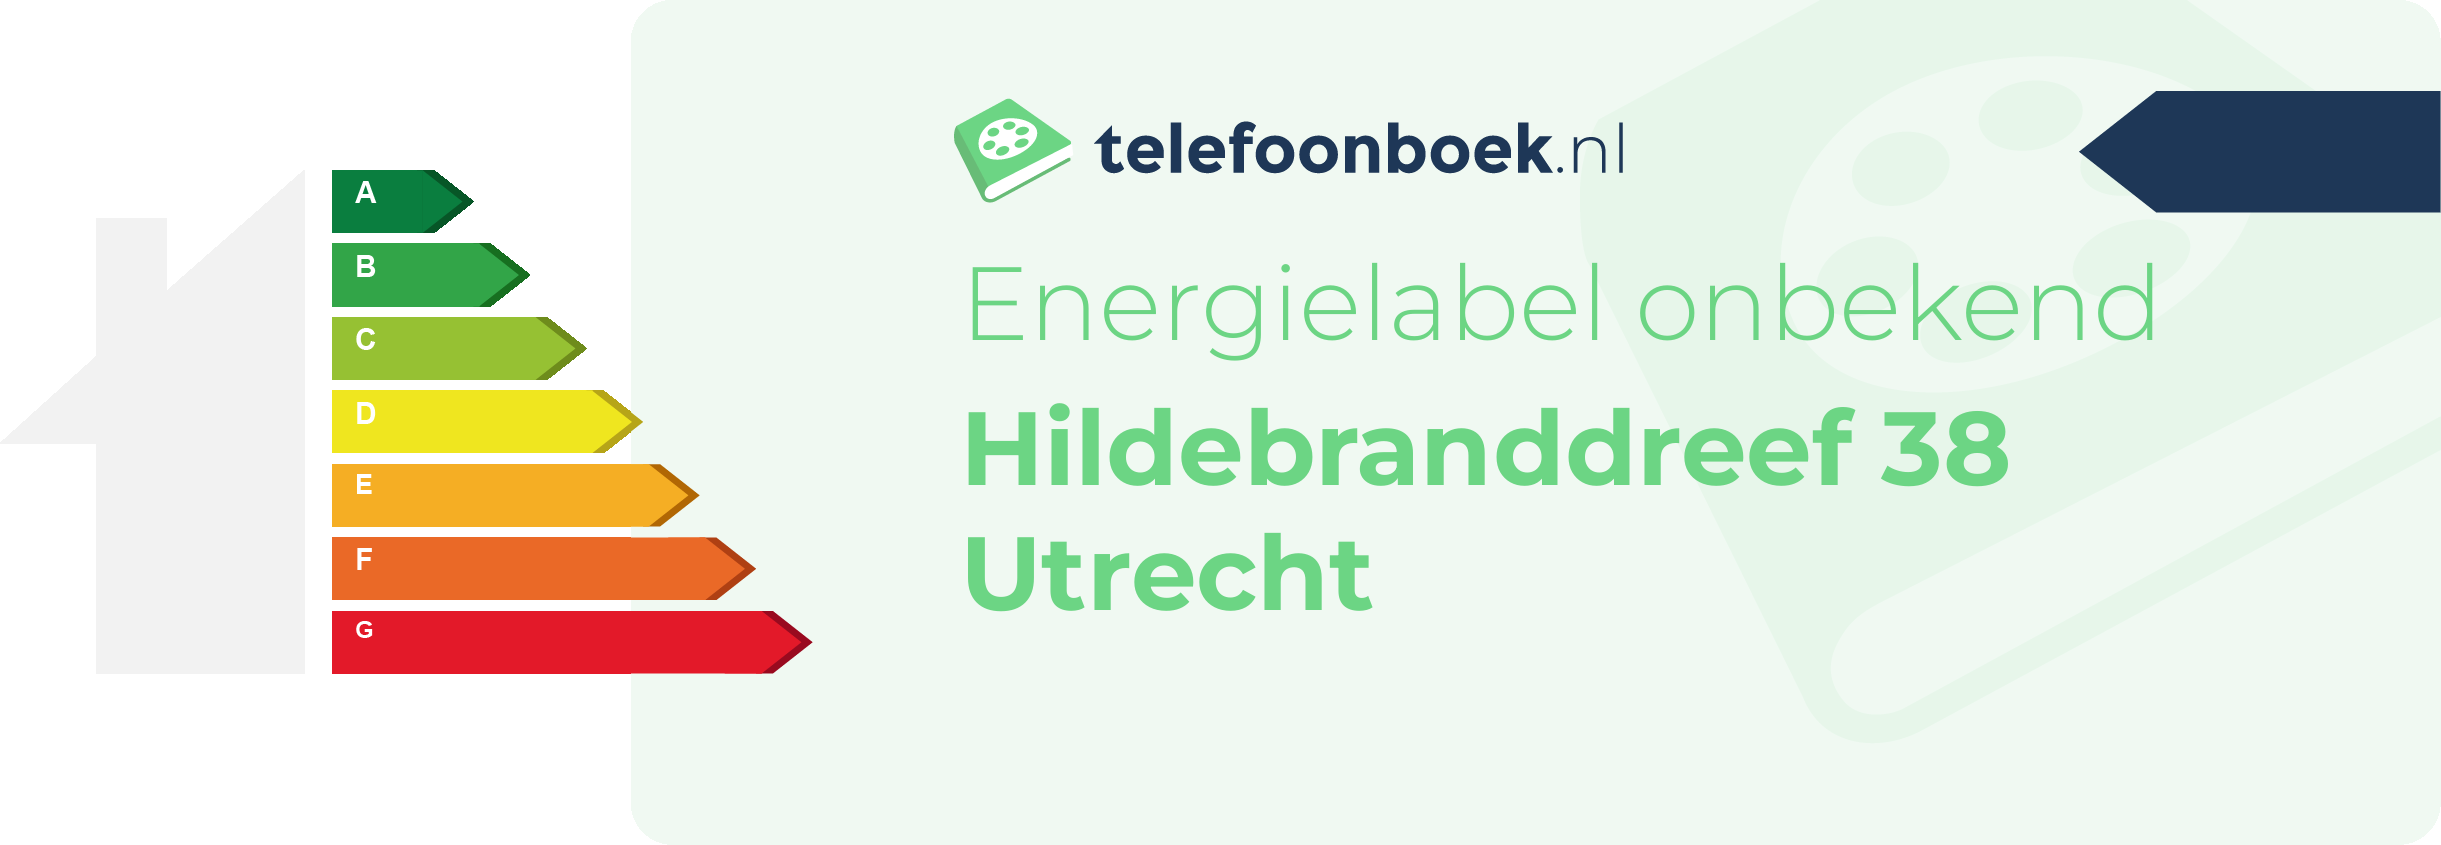 Energielabel Hildebranddreef 38 Utrecht